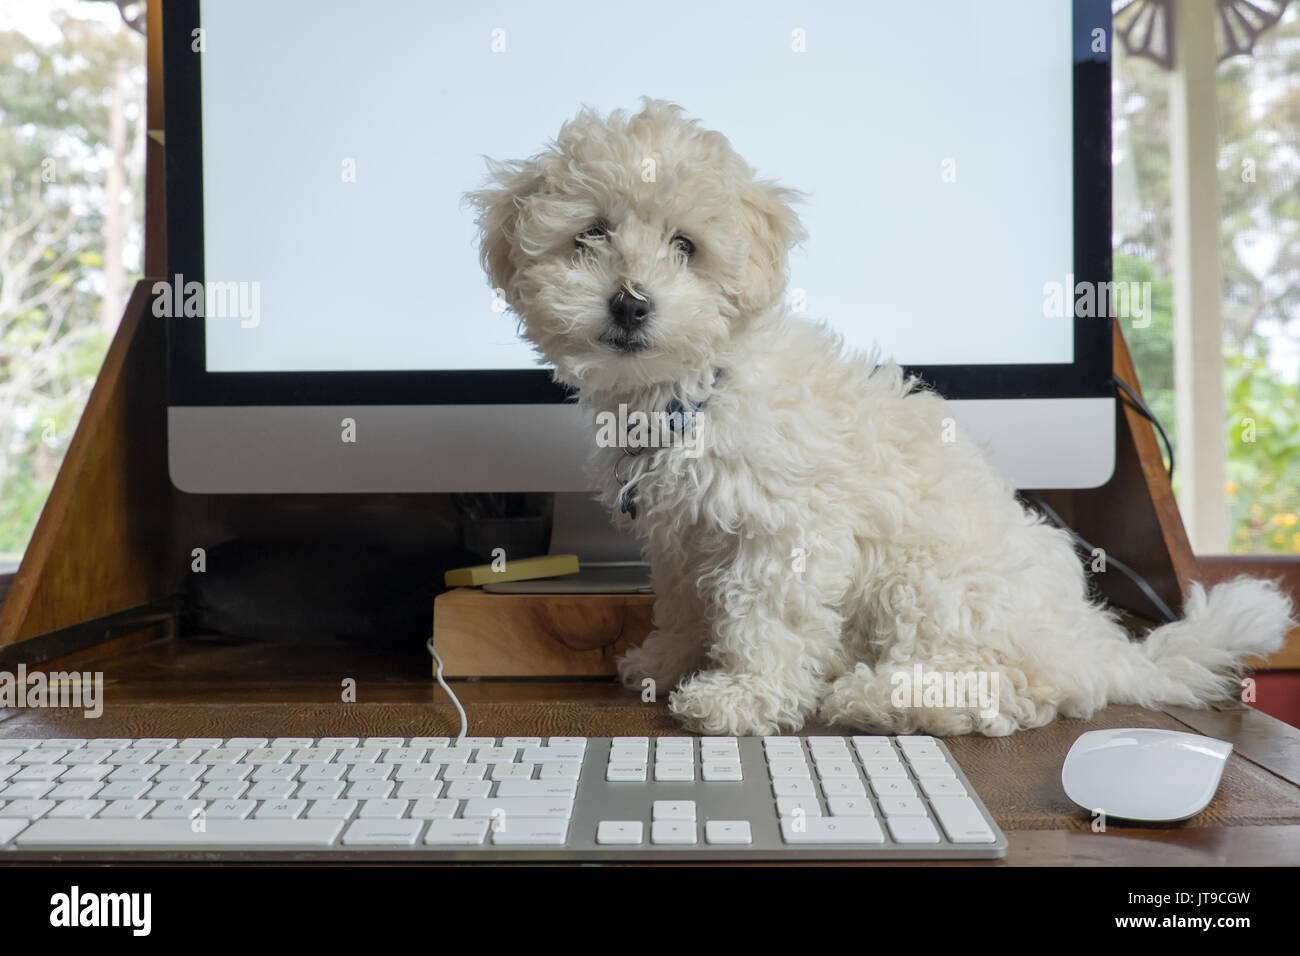 Lavorando da casa ufficio con bichon frise cucciolo di cane sulla scrivania con computer schermo, tastiera e mouse Foto Stock